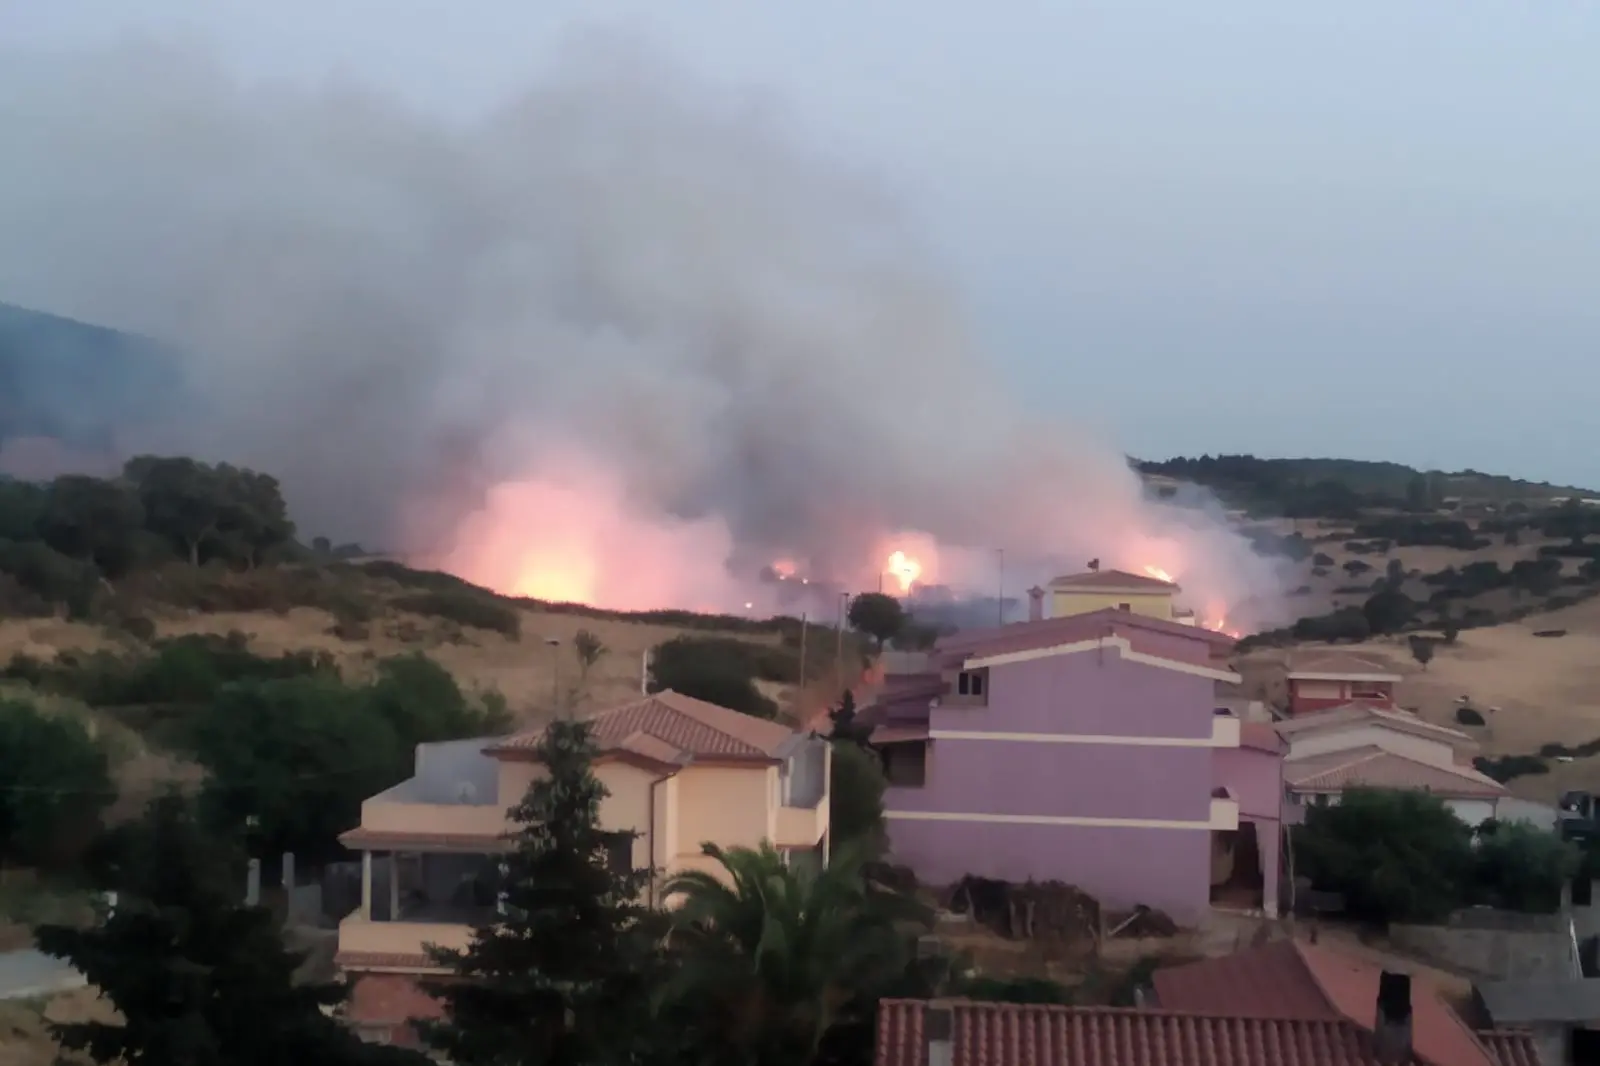 Devastante incendio nella notte alla periferia di Burcei